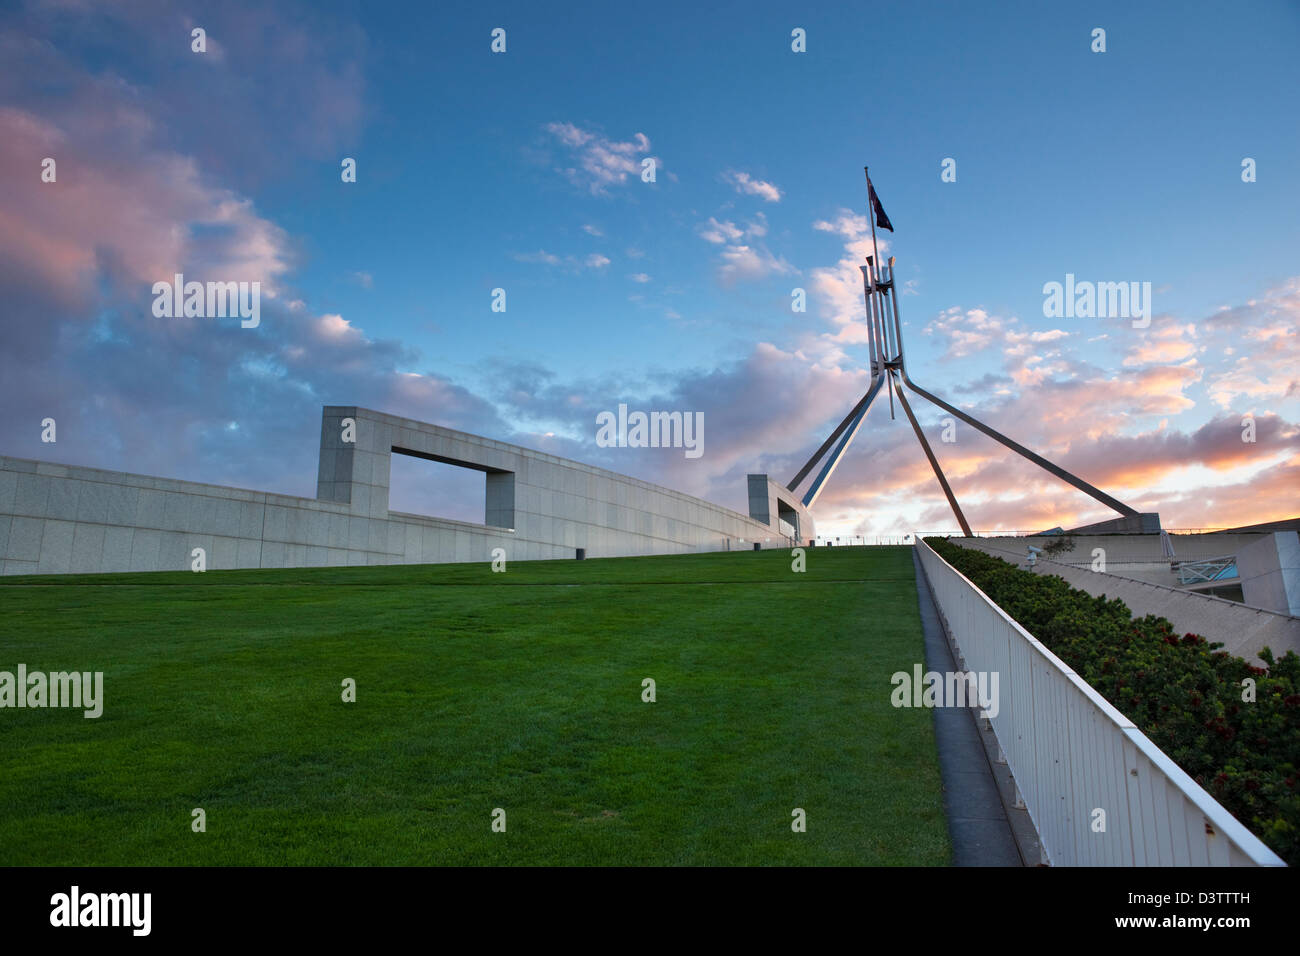 Der Rasen auf dem Dach und Fahnenmast des Parliament House in der Abenddämmerung. Canberra, Australian Capital Territory (ACT), Australien Stockfoto